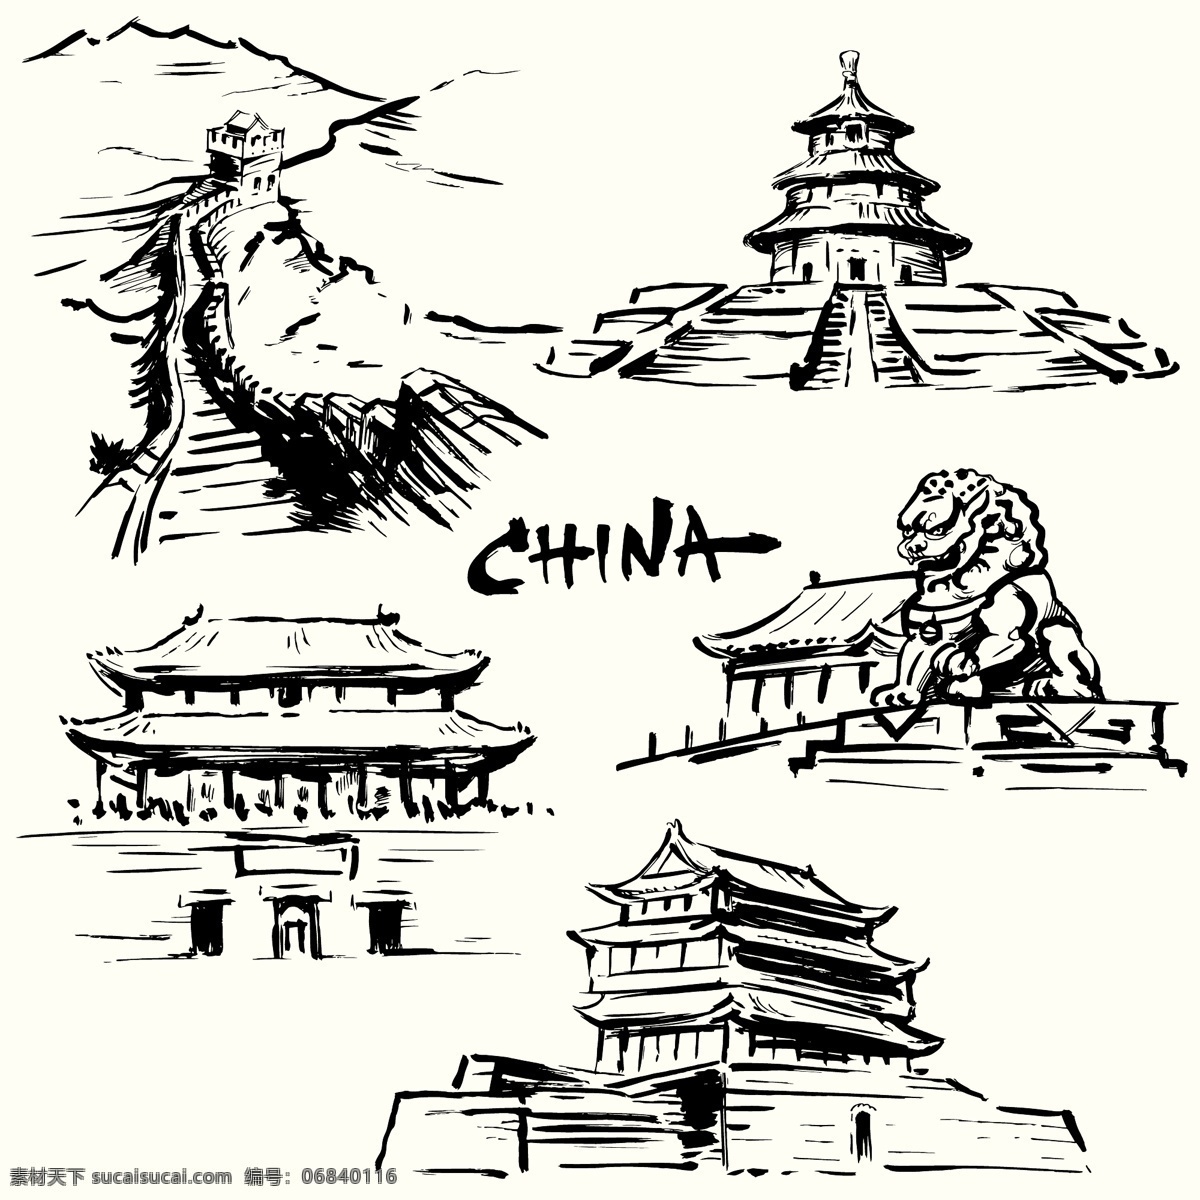 中国著名建筑 中国 著名 建筑 长城 故宫 天安门 天坛 北京 手绘 中国风 动漫动画 风景漫画